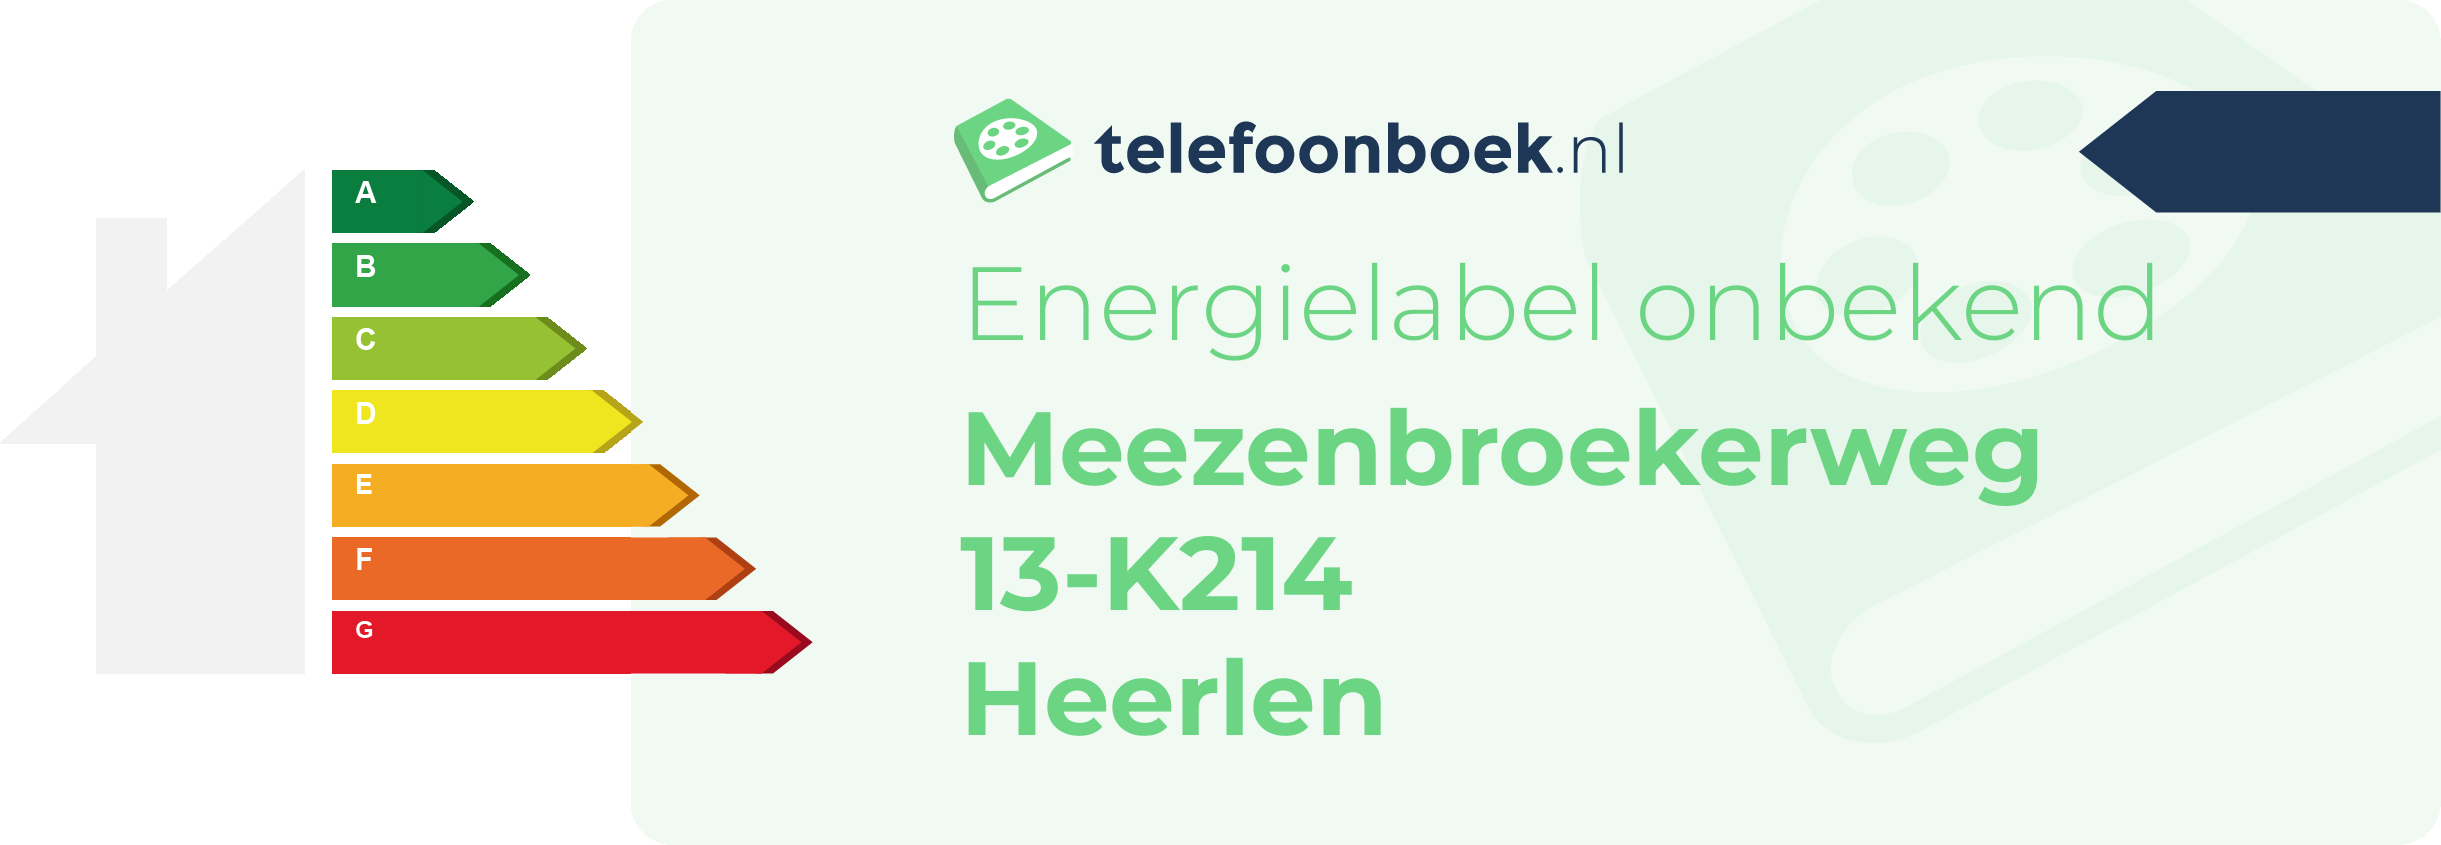 Energielabel Meezenbroekerweg 13-K214 Heerlen